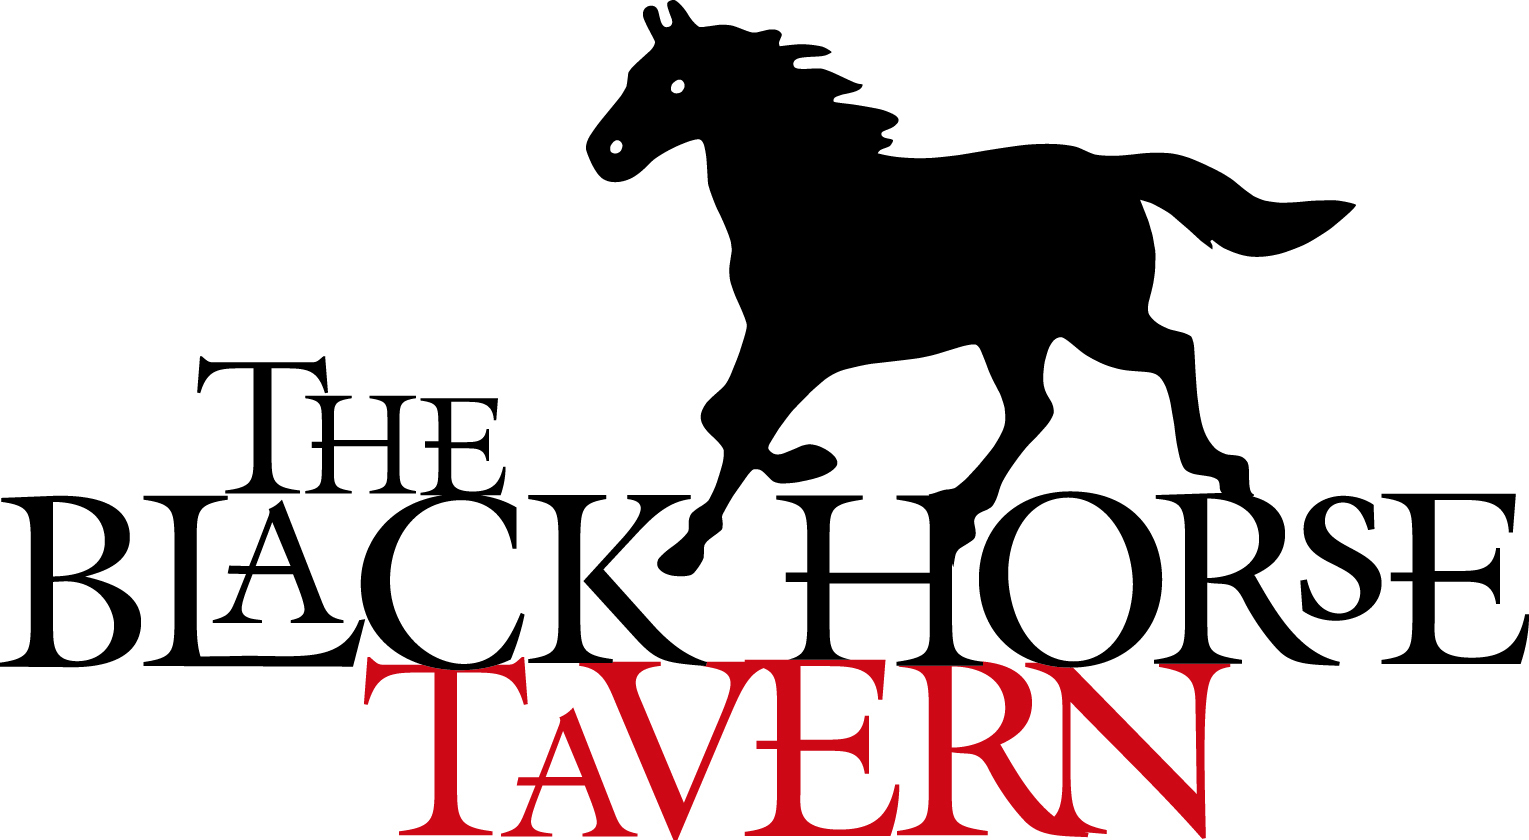 Black Horse Tavern - Mendham - NJ - Mendham Borough, NJ ...